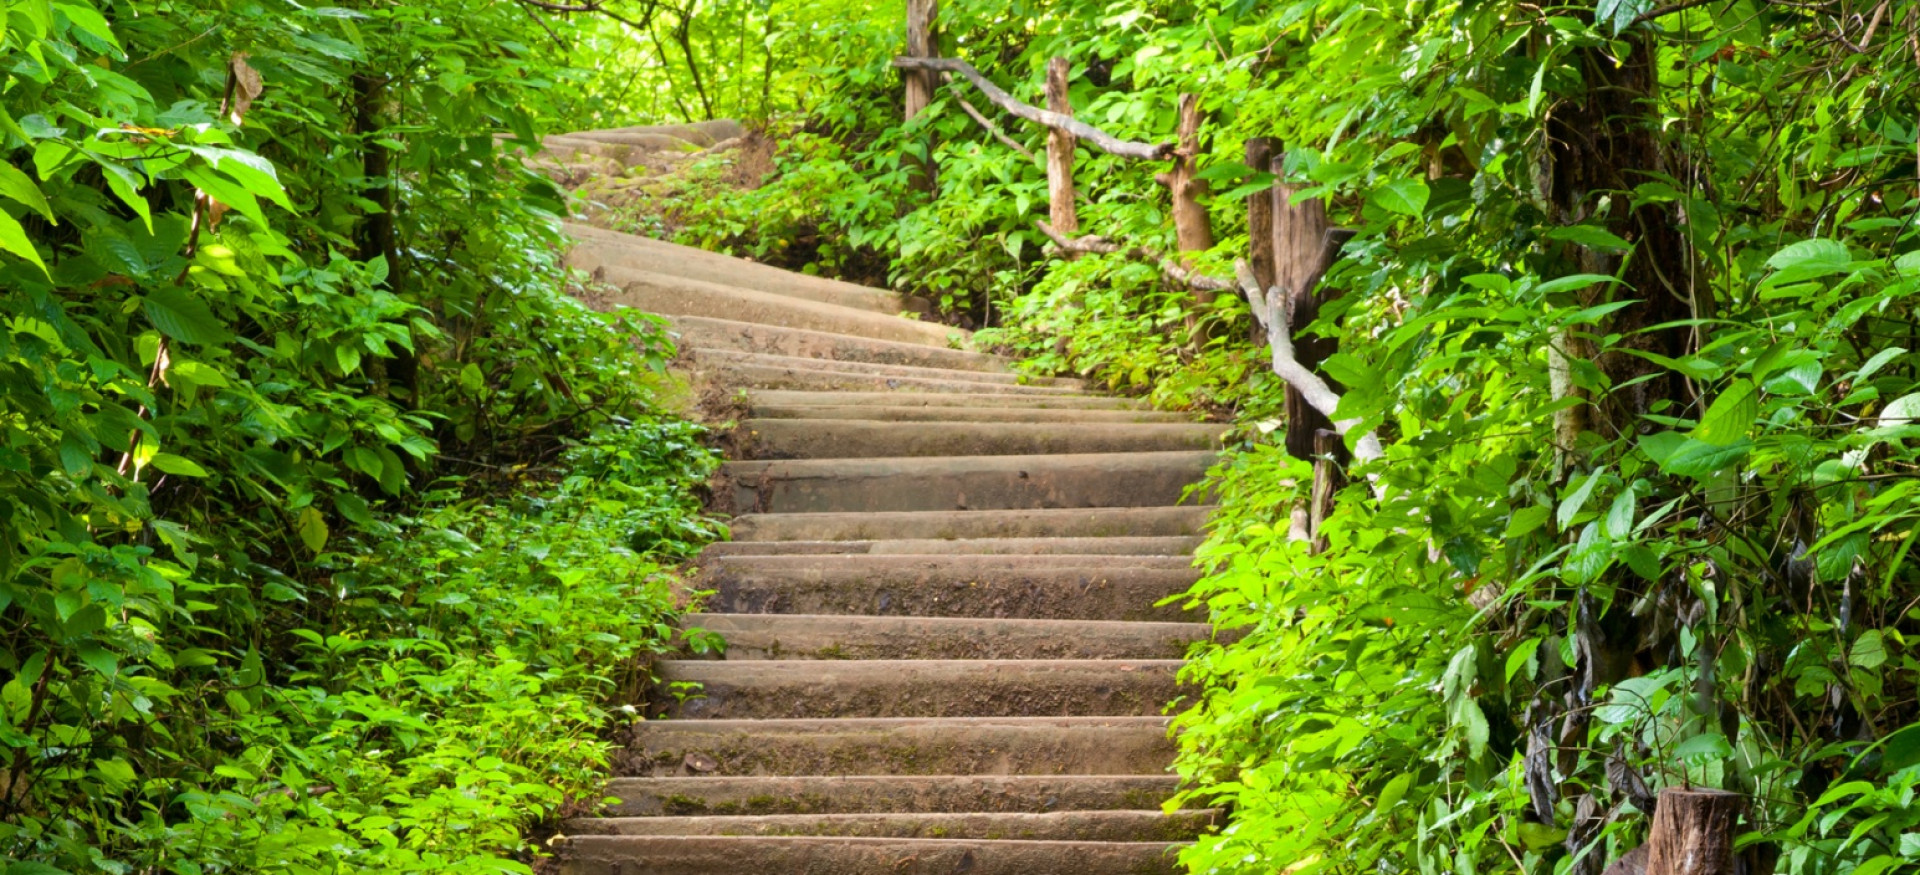 Treppe aufwärts durch einen dichten grünen Laubwald